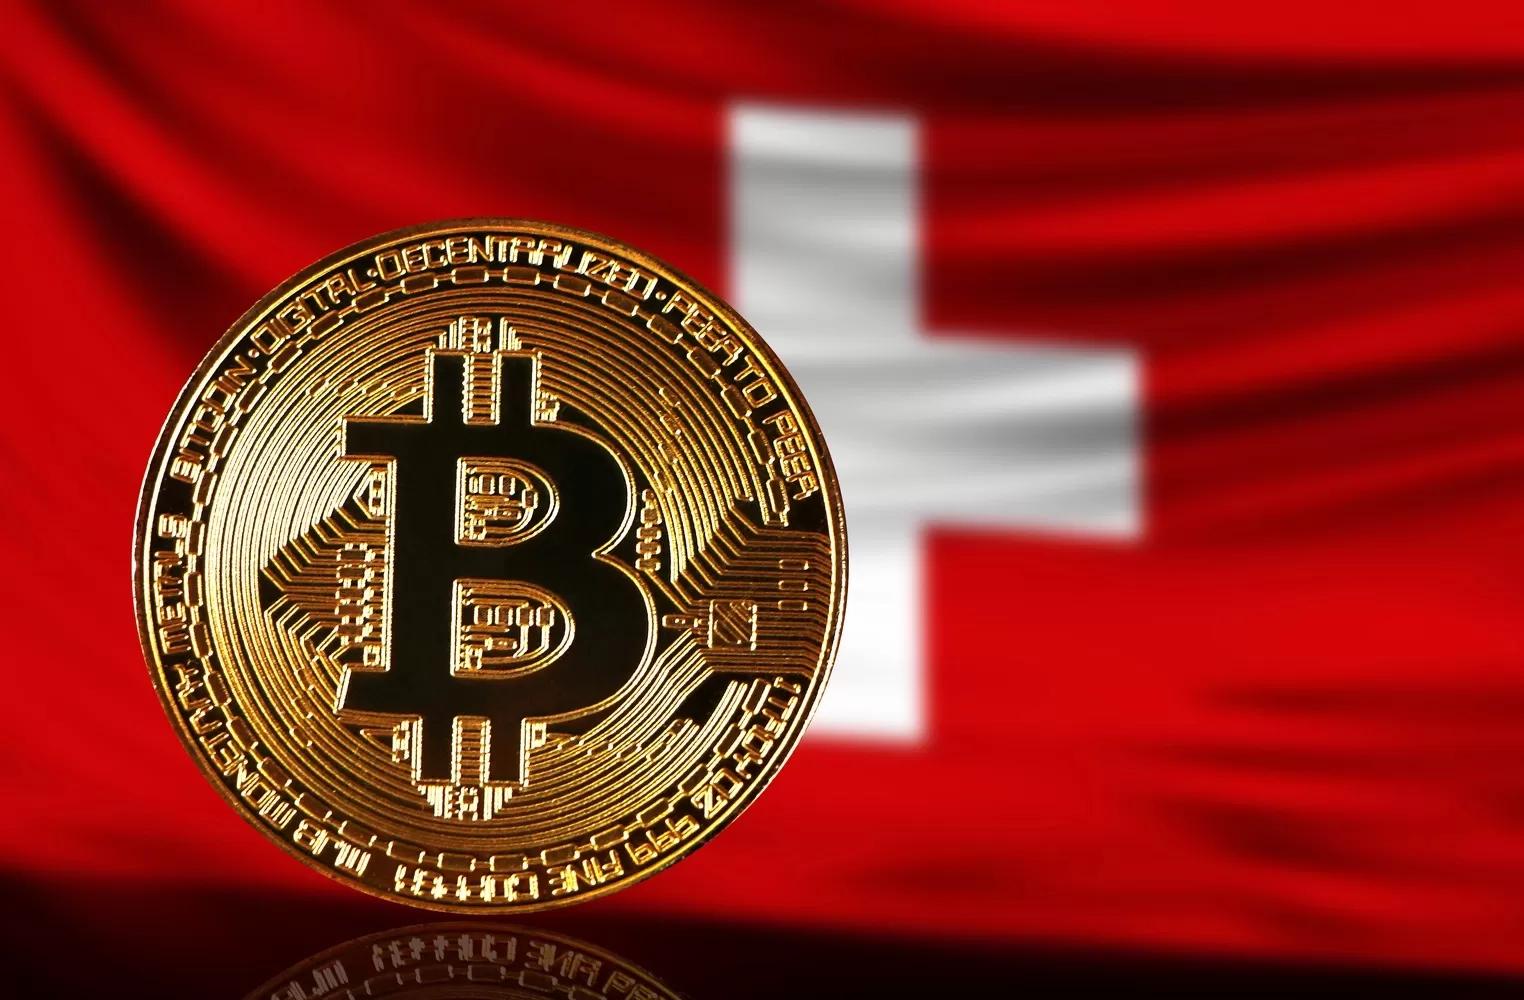 Développement important : la banque suisse UBS, âgée de 160 ans, franchit une étape géante dans le Bitcoin